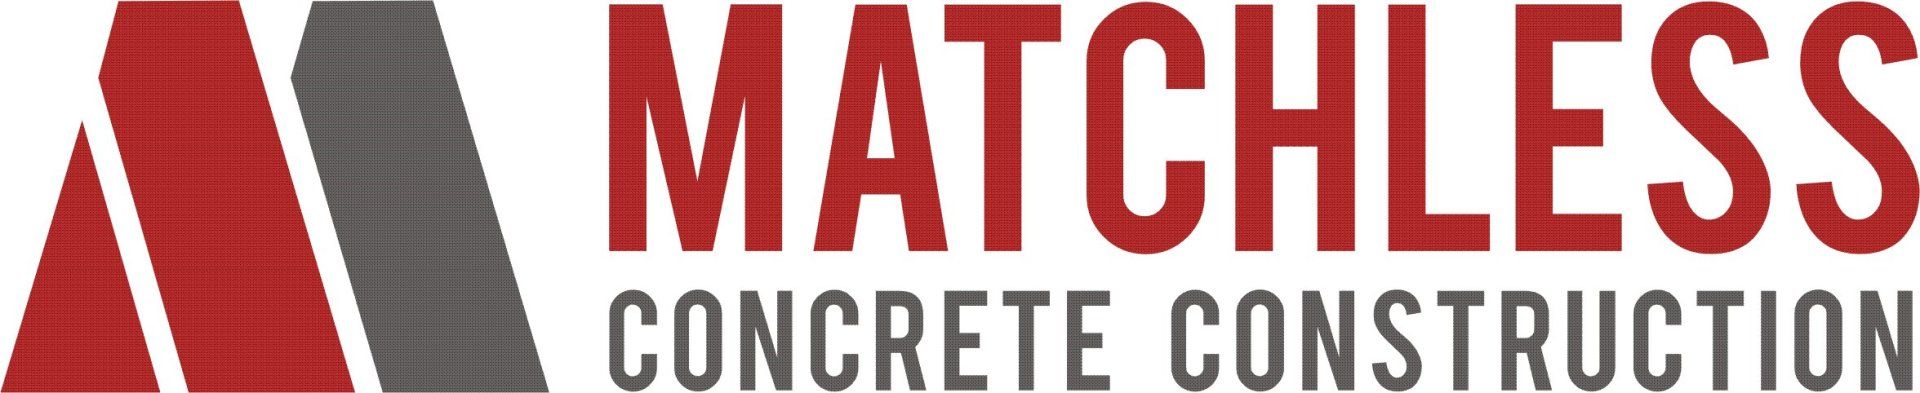 Matchless Concrete Construction LLC